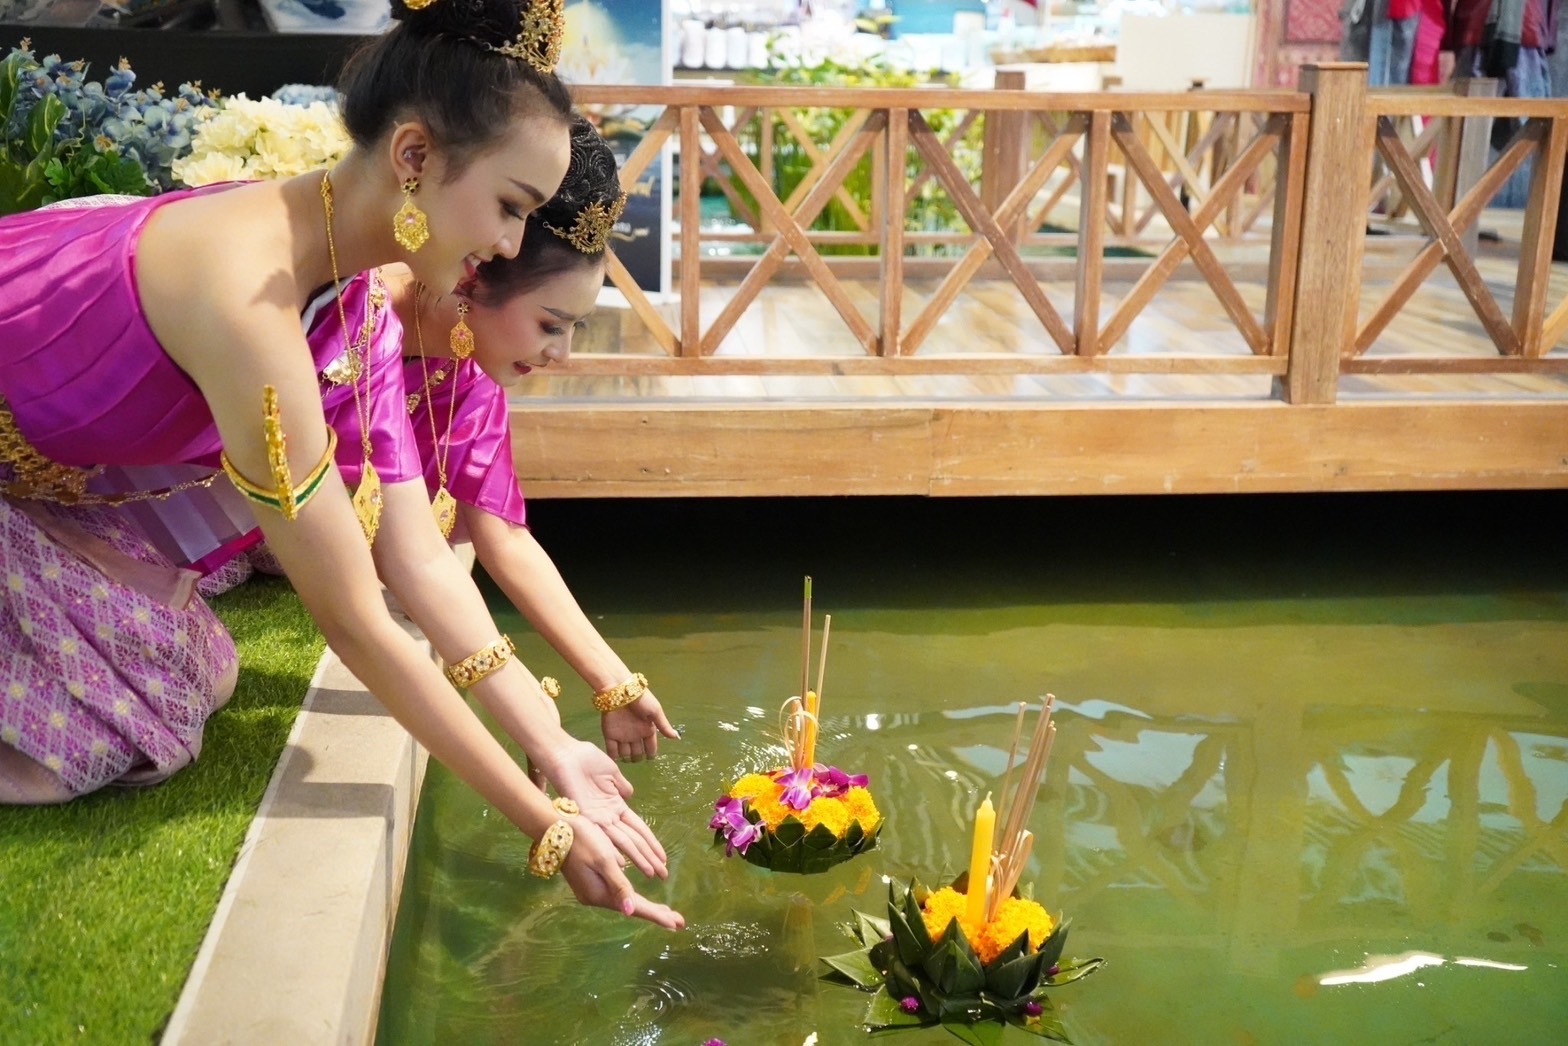 บลูพอร์ต หัวหิน จัดงานประเพณีลอยกระทงสุดยิ่งใหญ่ ภายใต้ งาน Touch of Thainess Loi Krathong Festival สัมผัสความเป็นไทยไปกับเทศกาลลอยกระทง